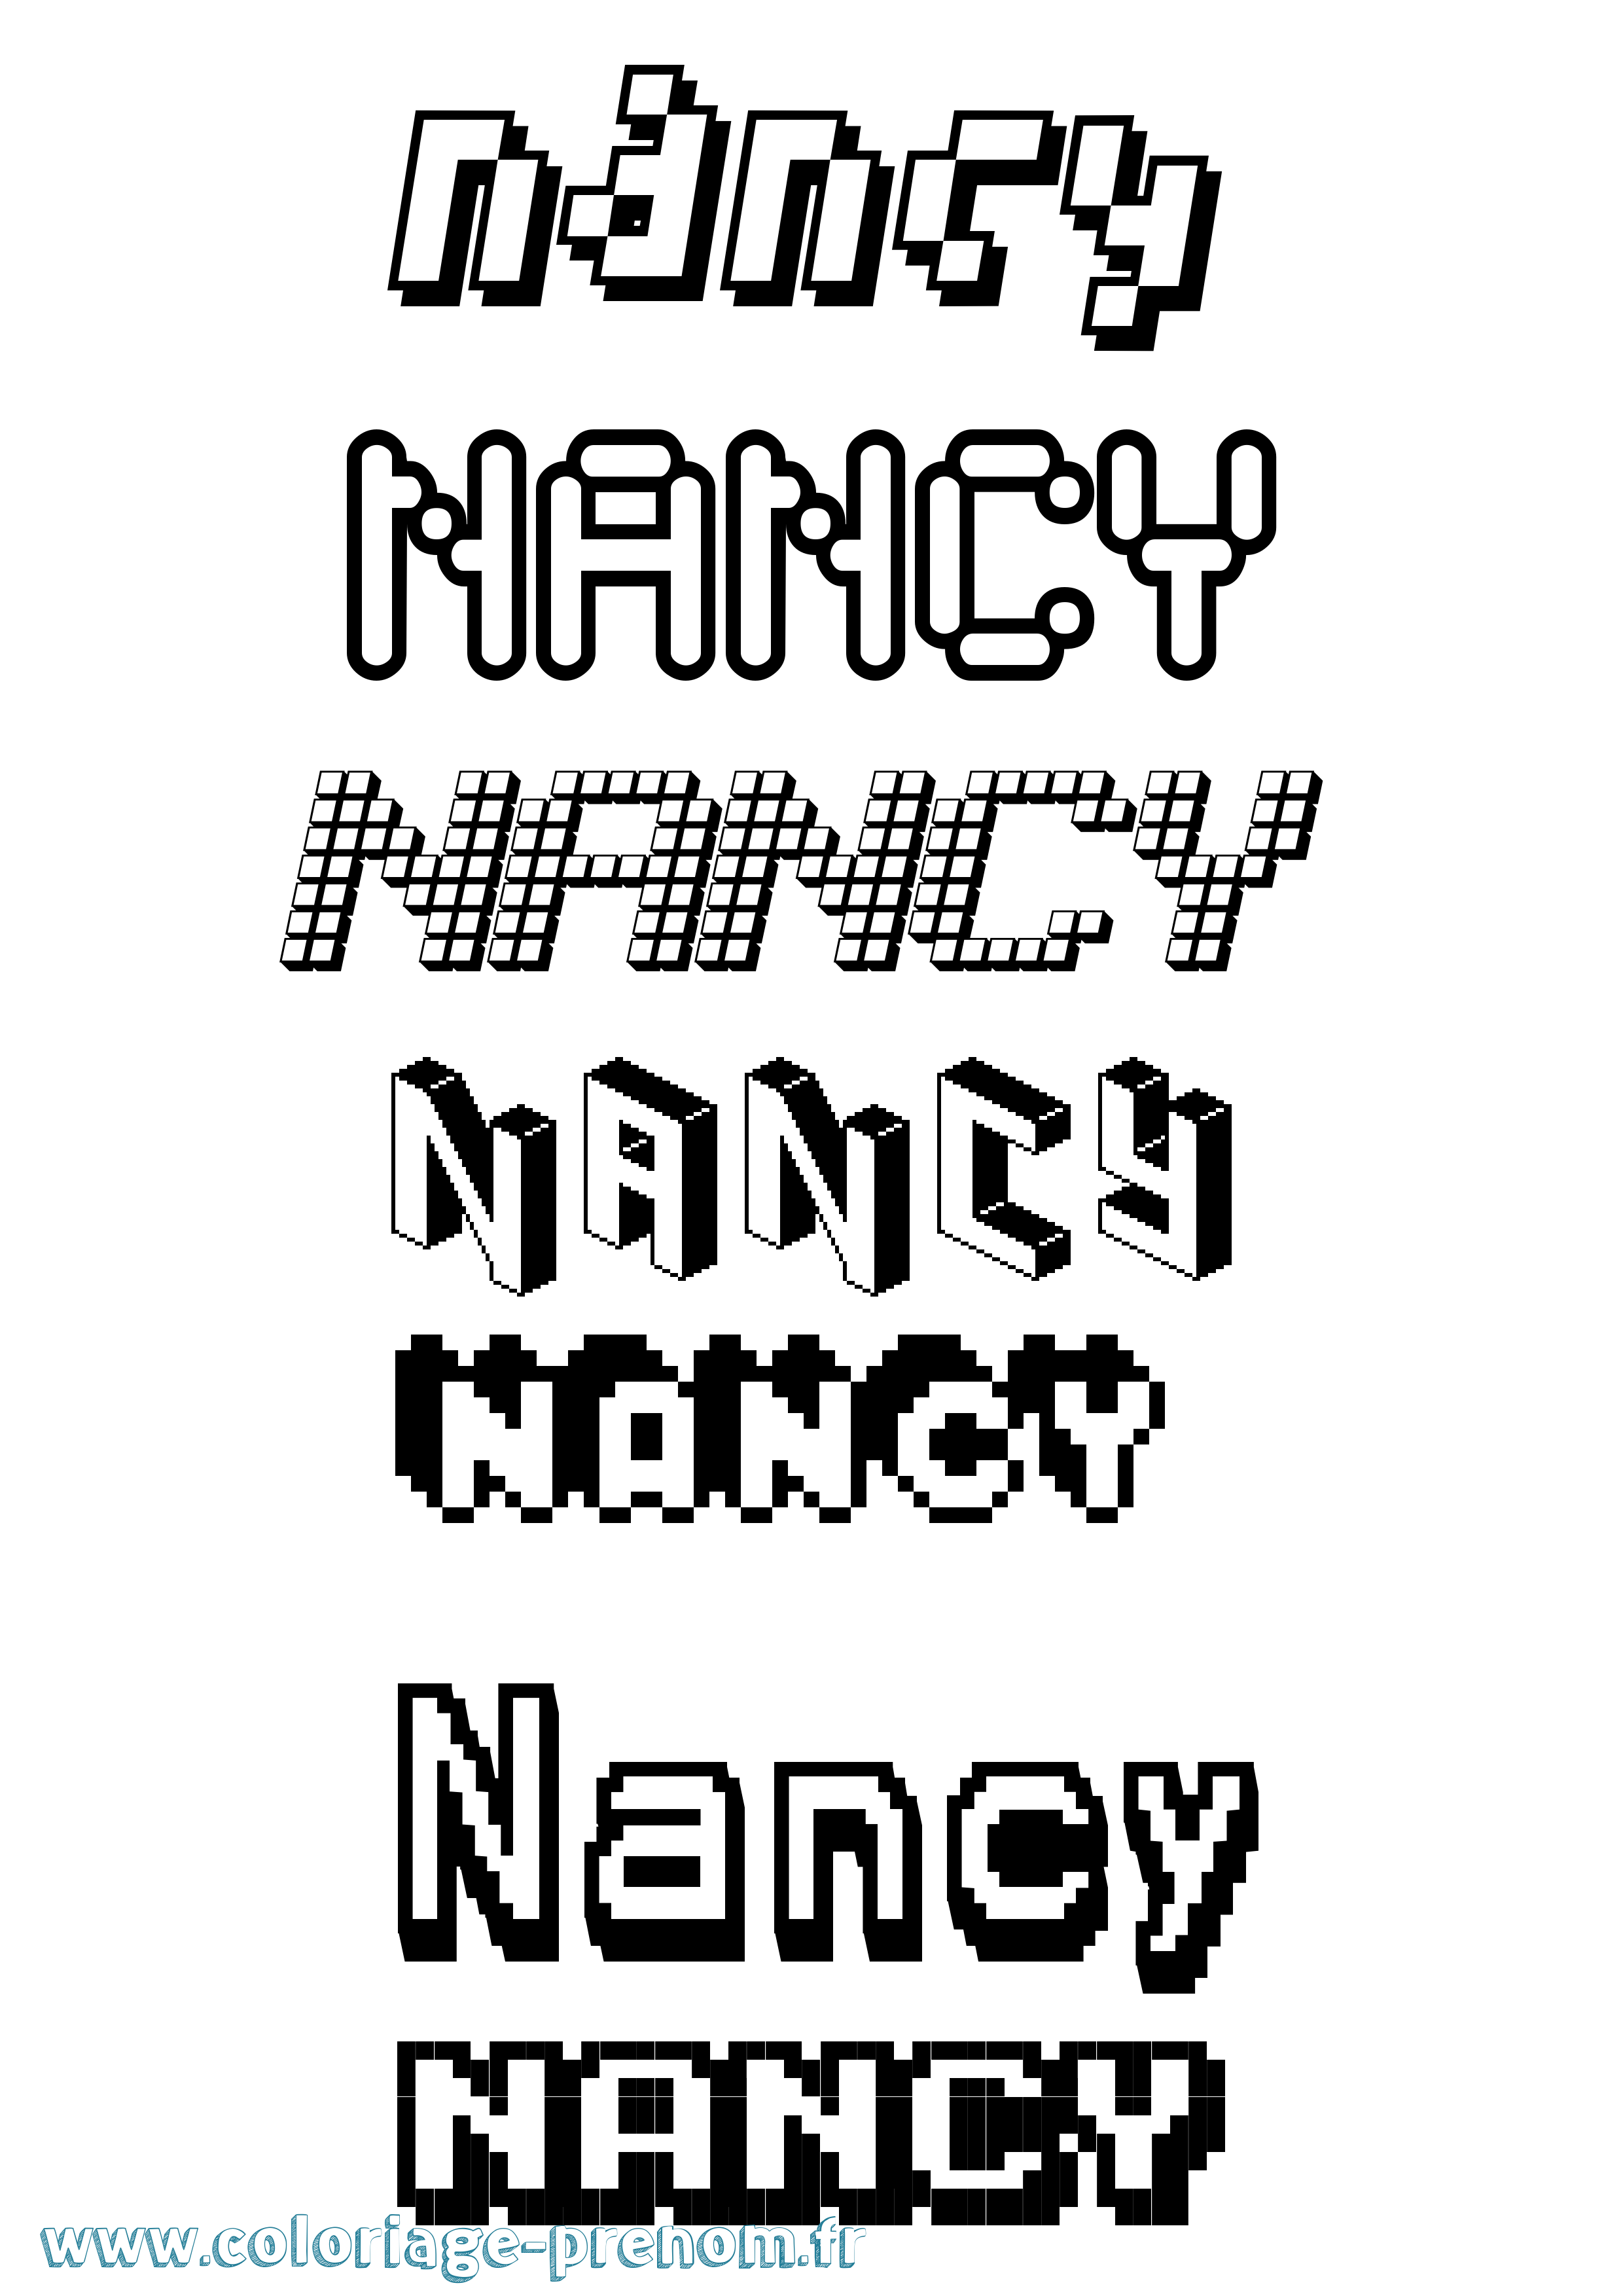 Coloriage prénom Nancy Pixel